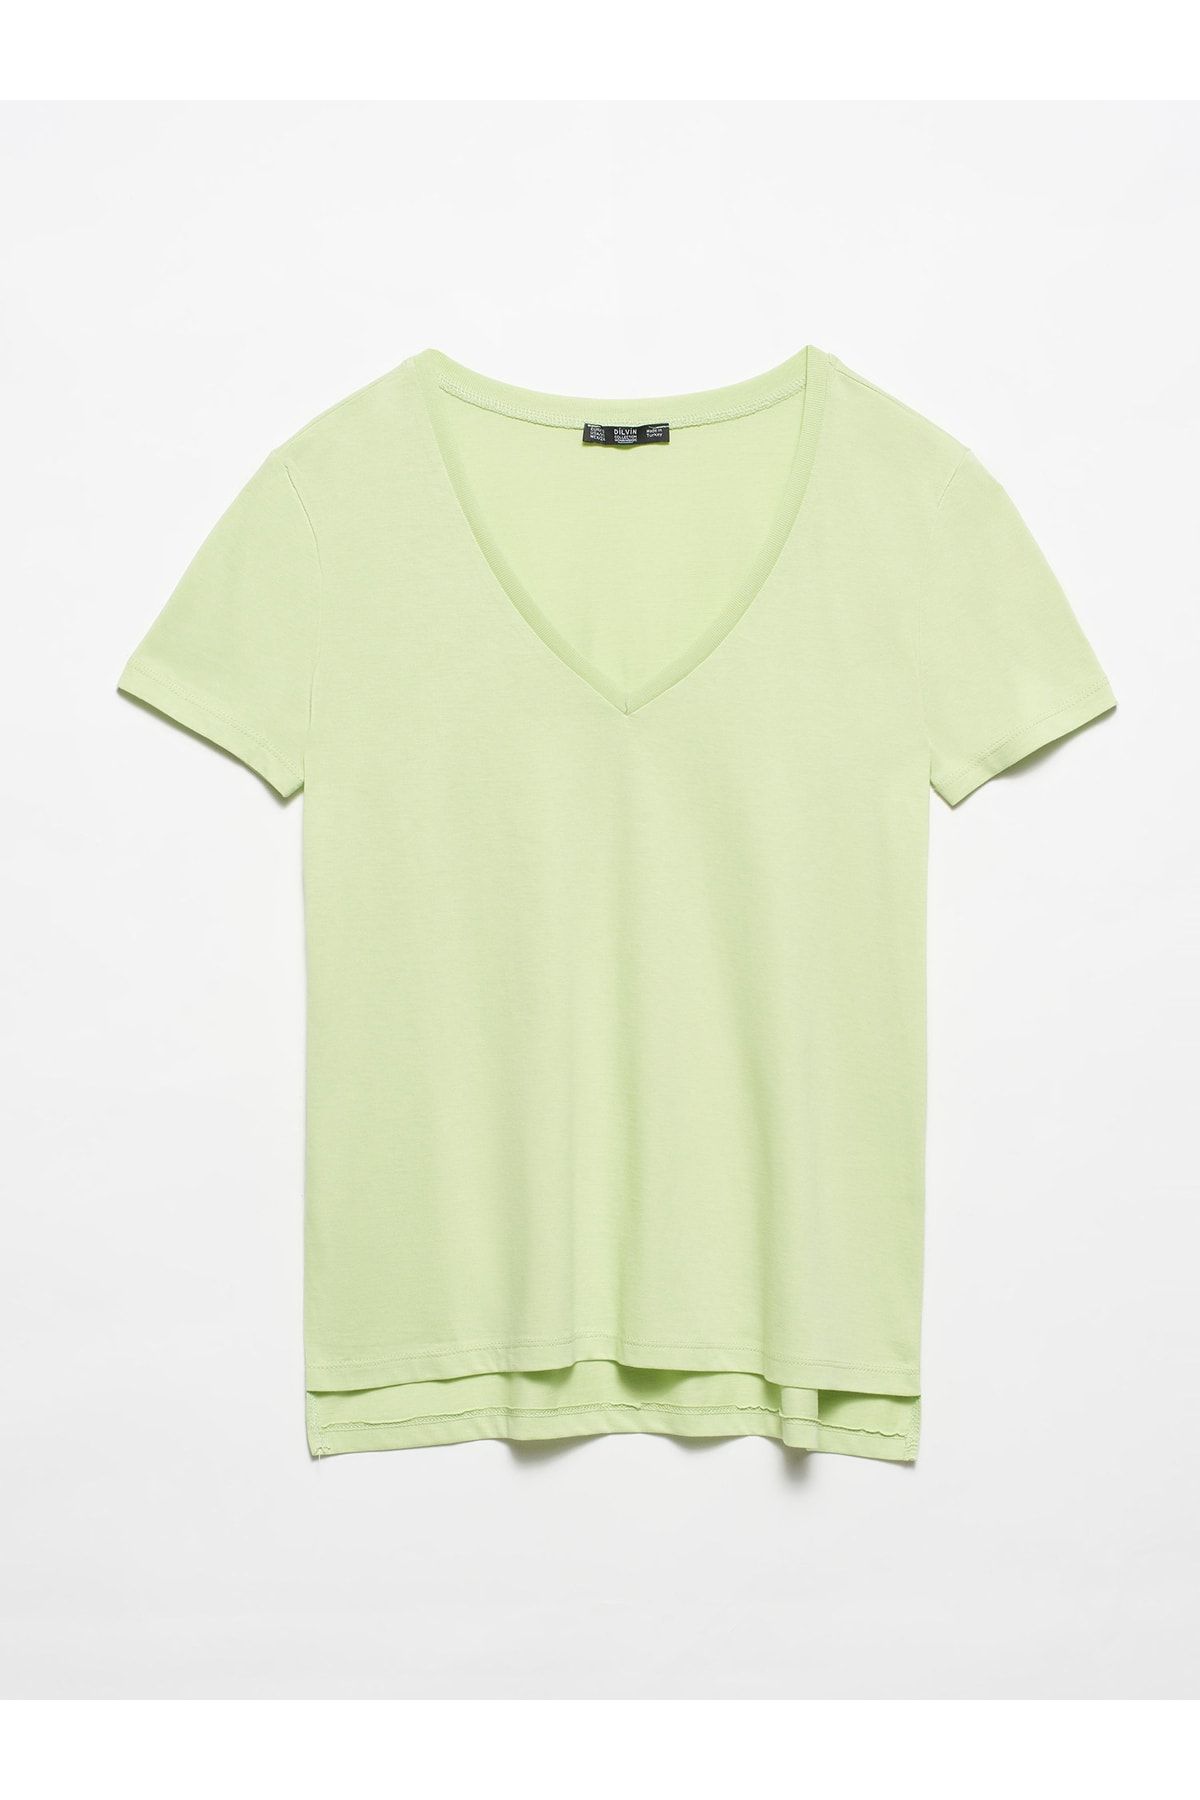 Dilvin Kadın Su Yeşili V Yaka Basic T-shirt 3470